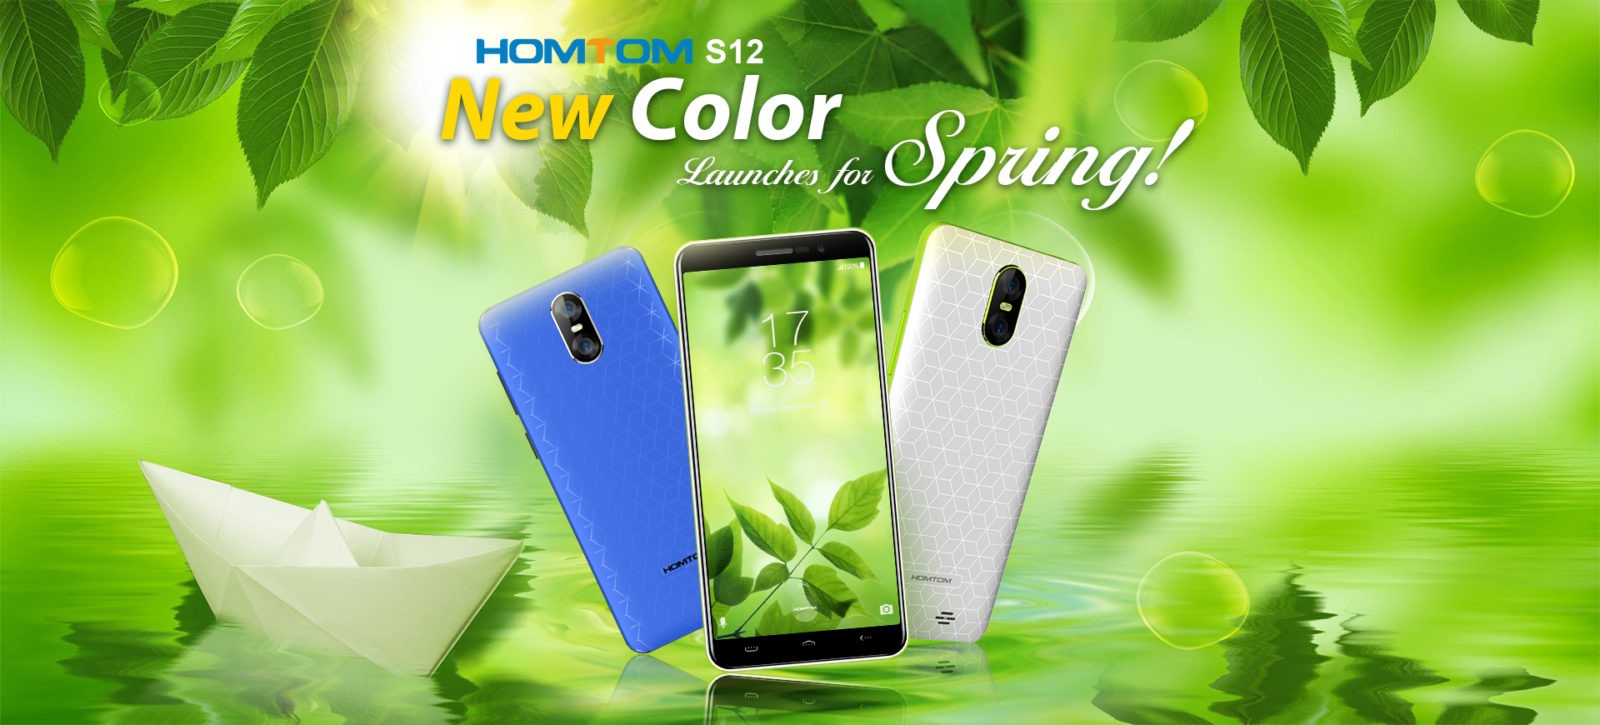 Смартфон HOMTOM S12 выйдет в новых «весенних» цветах